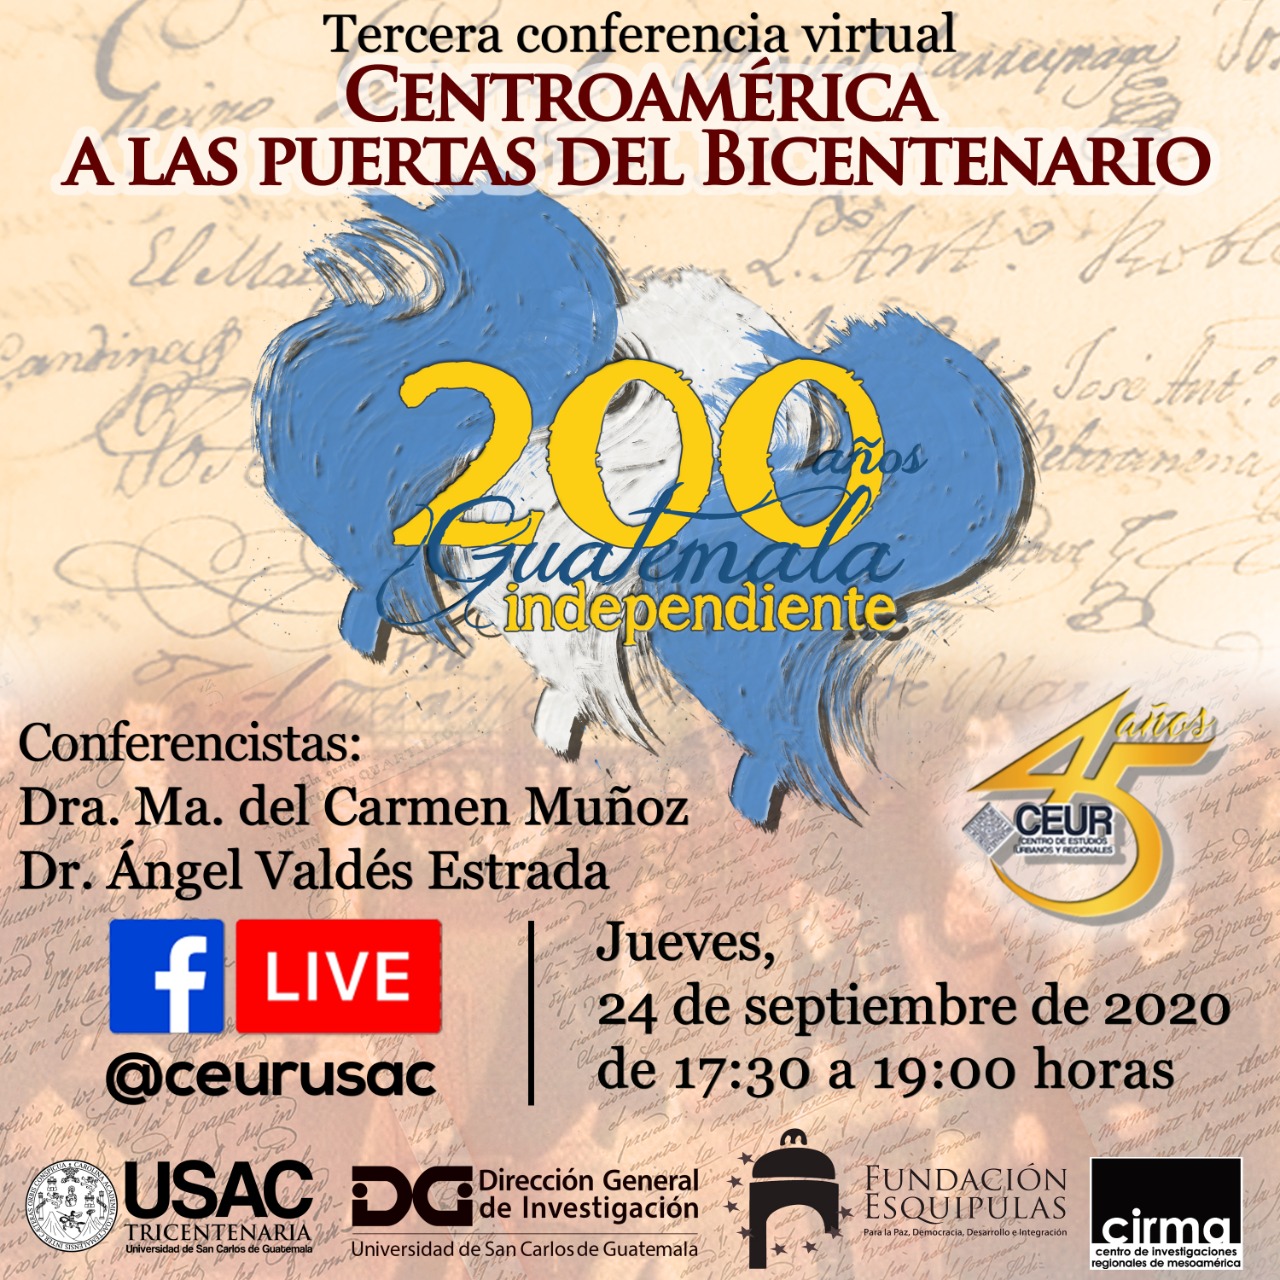 TERCERA CONFERENCIA VIRTUAL: Centroamérica a las puertas del bicentenario #CEUR